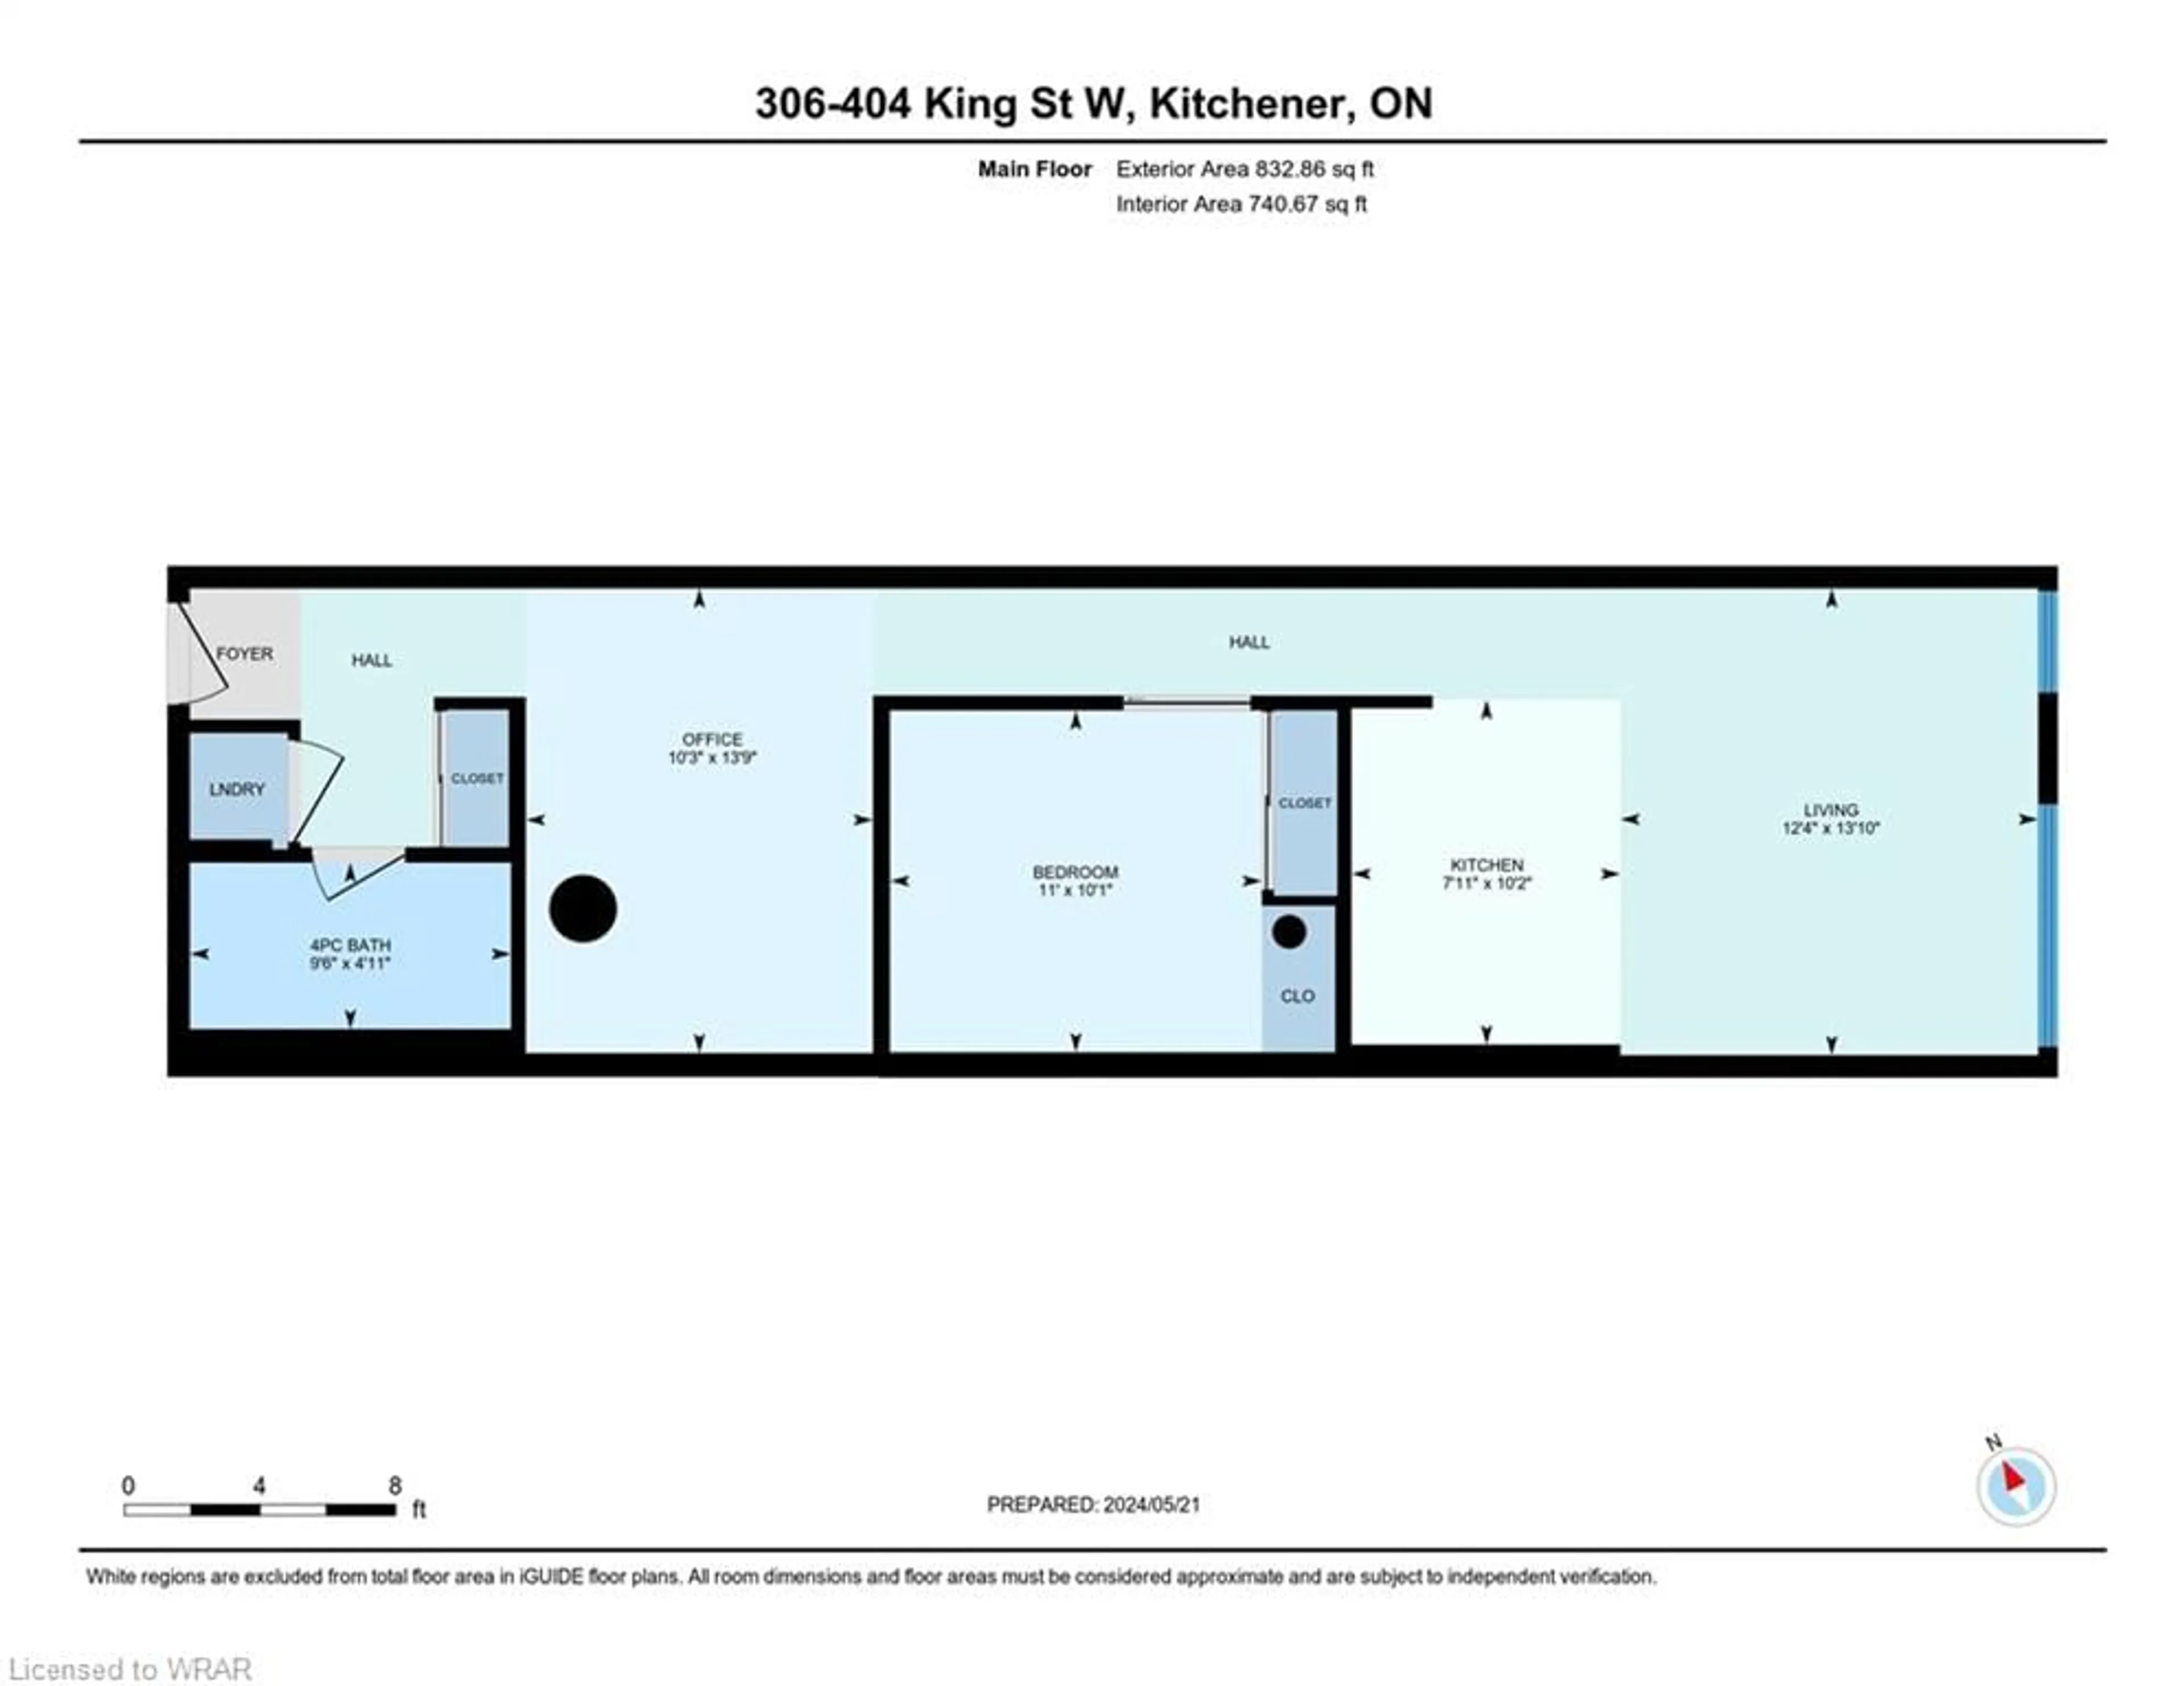 Floor plan for 404 King St #306, Kitchener Ontario N2G 4Z9